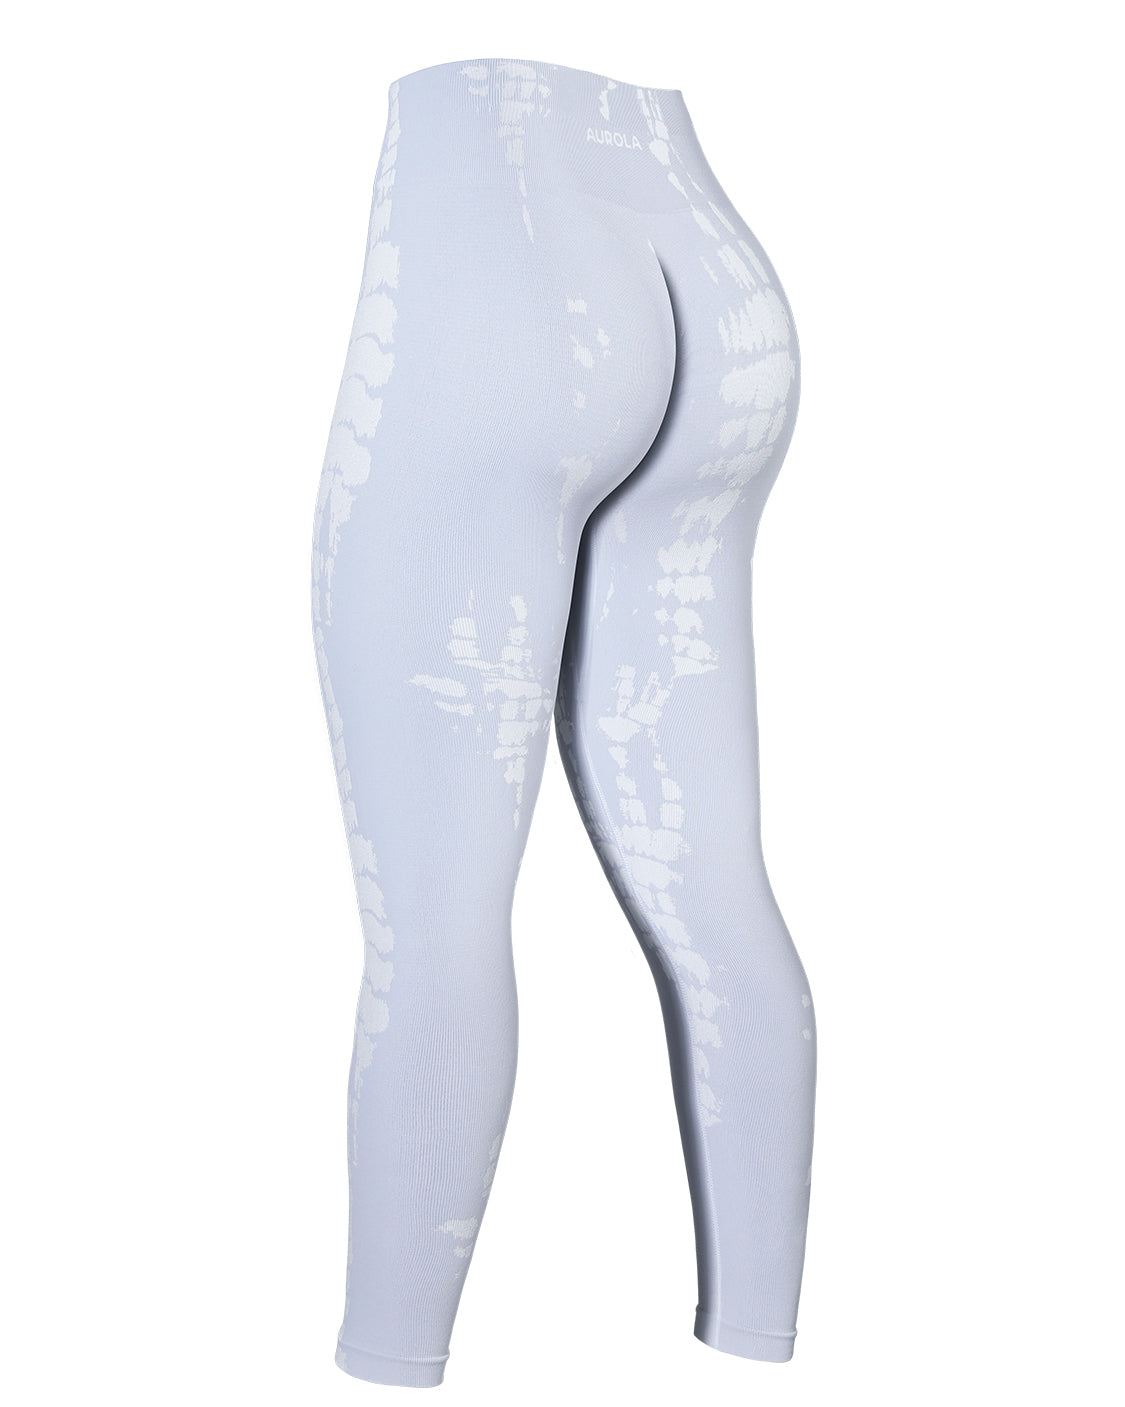 Aurola, Pants & Jumpsuits, Aurola Dream Collection Leggings In The Color  Blanc De Blanc White